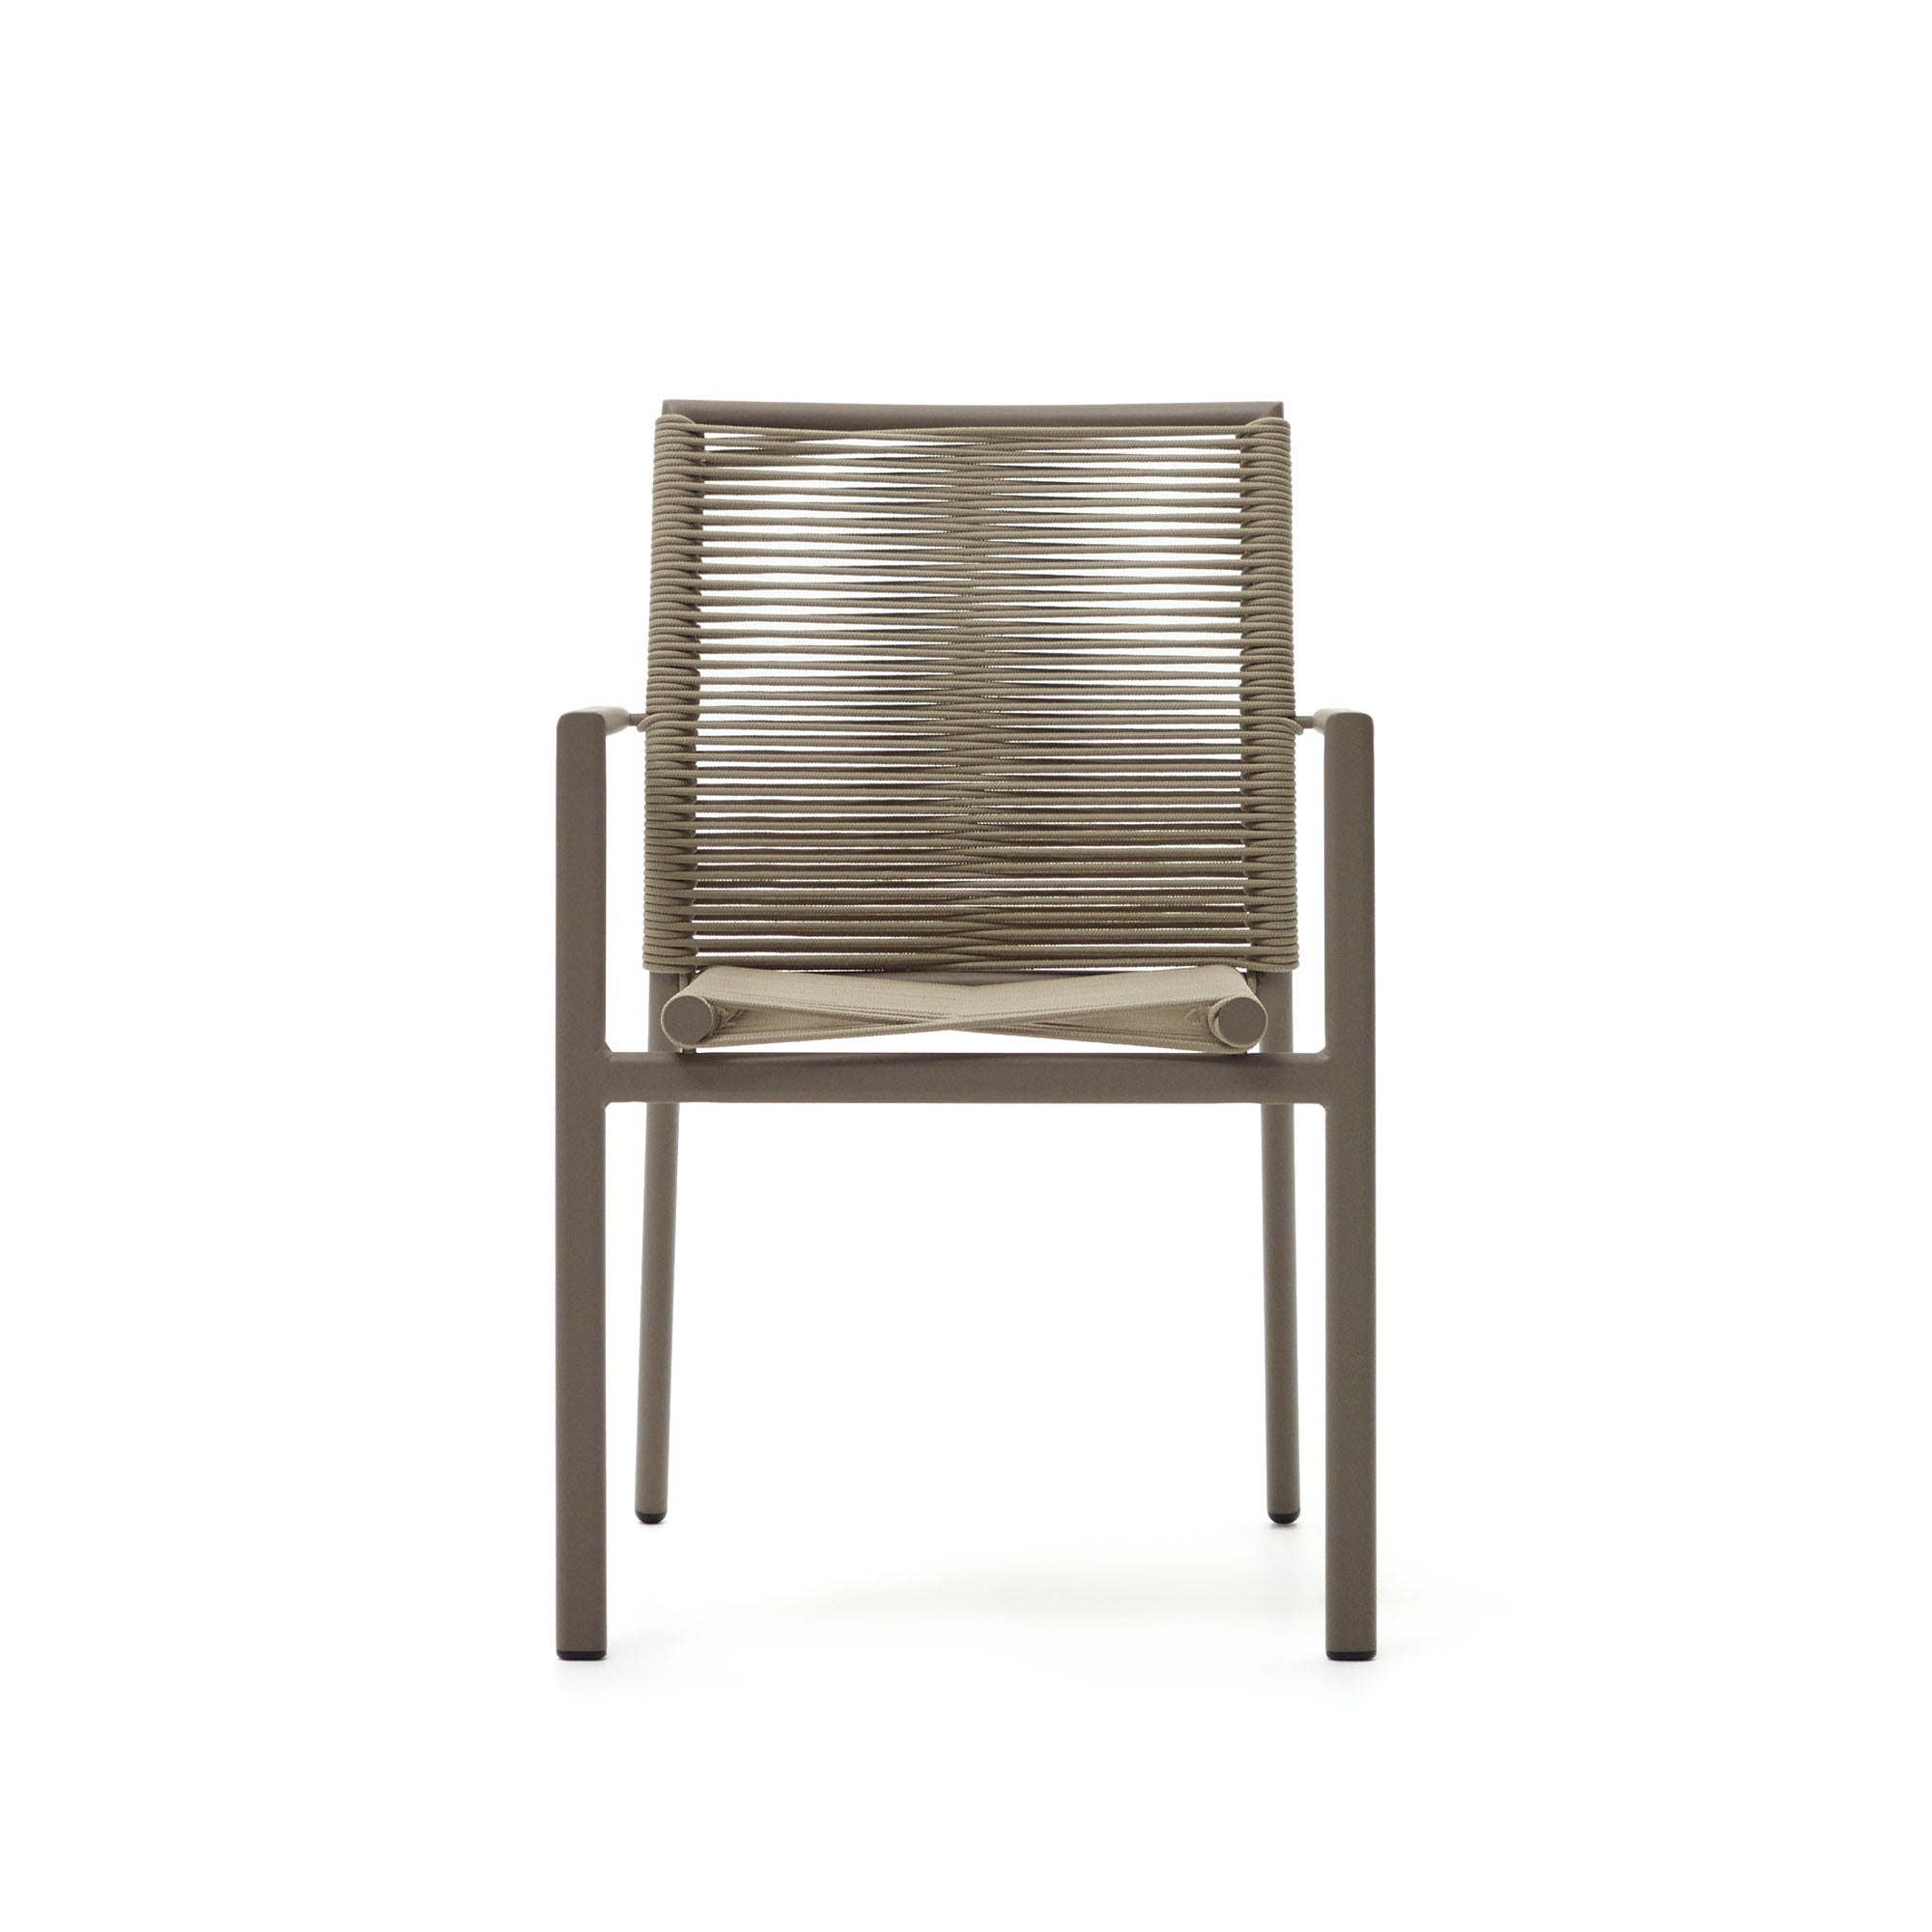 Culip alumíniumból és zsinórból készült, egymásba rakható kültéri szék barna színben